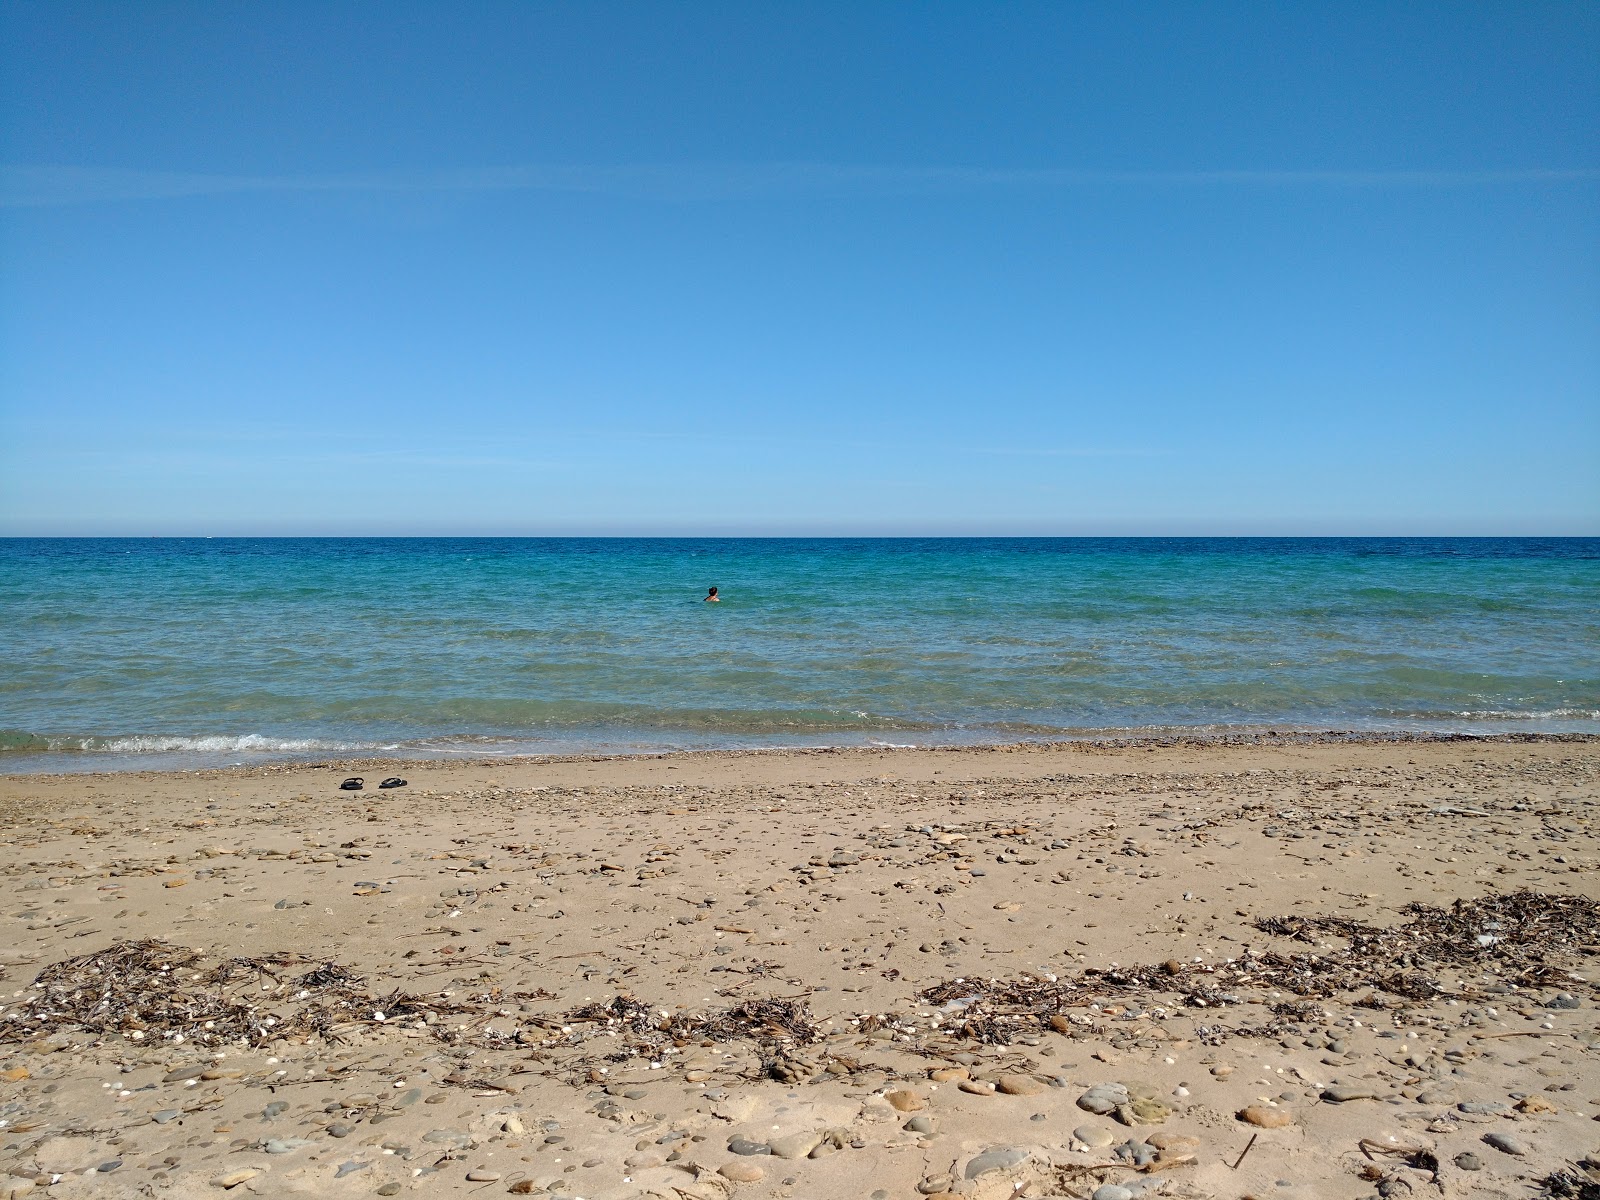 Olindo's beach'in fotoğrafı geniş plaj ile birlikte